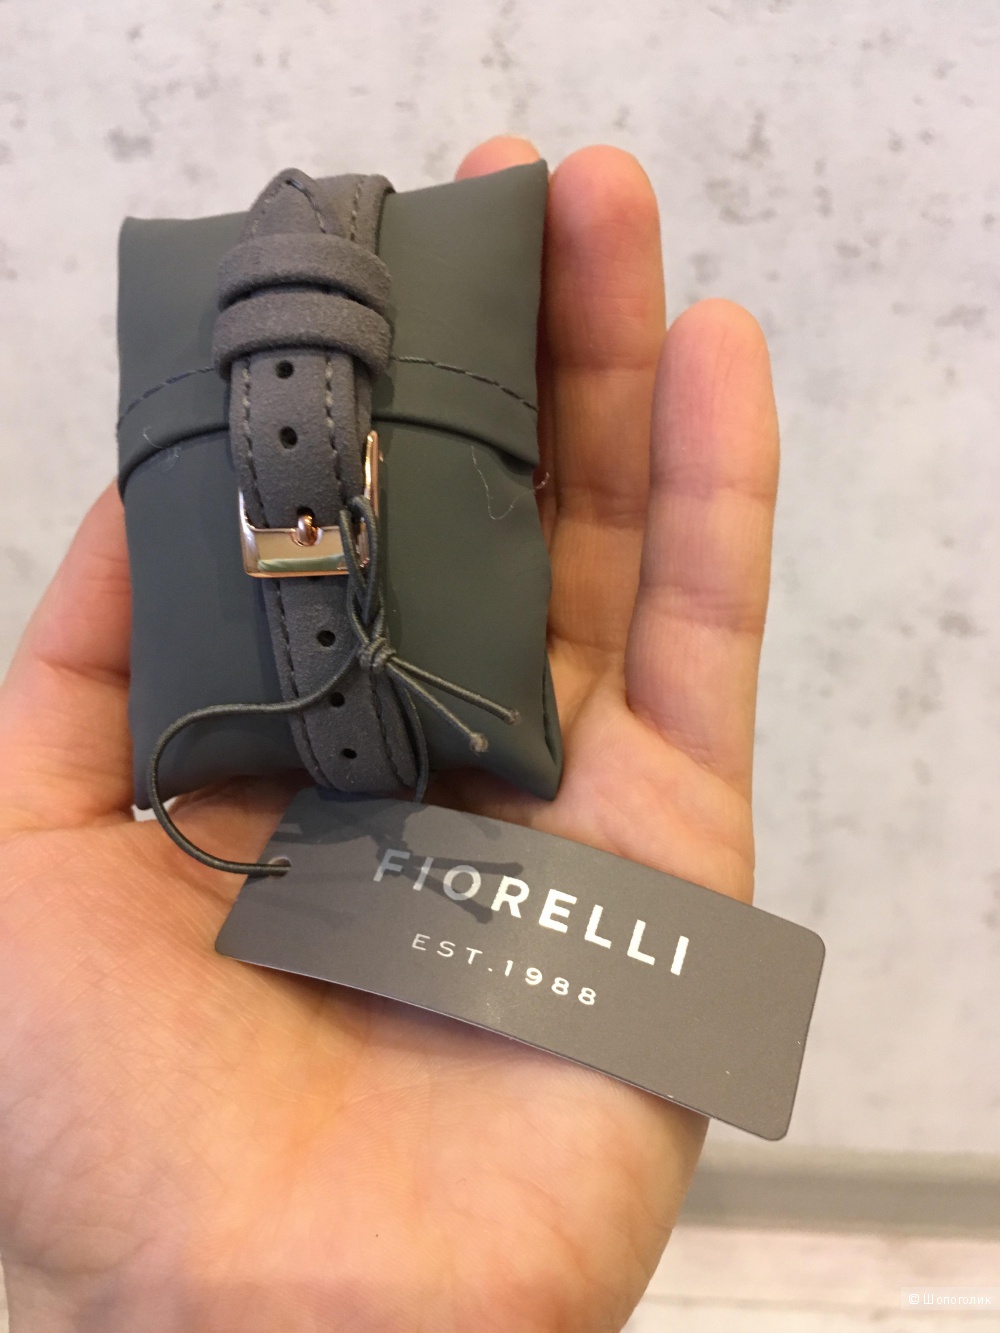 Часы Fiorelli